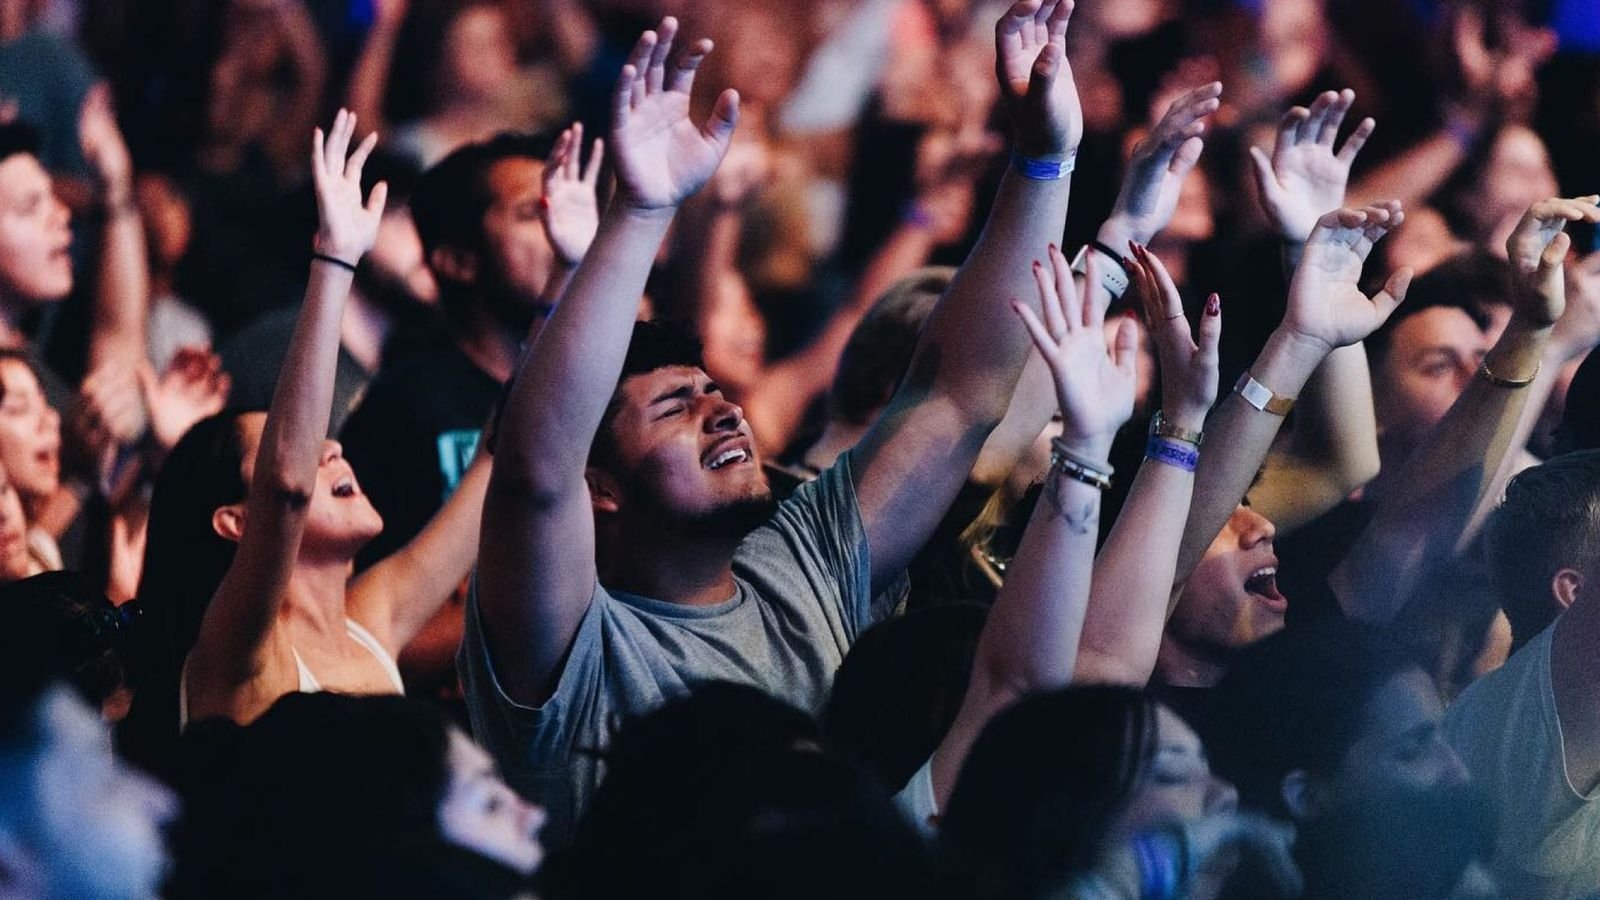 Centenas de jovens aceitam Jesus em culto de 12h: "Fome de Deus"